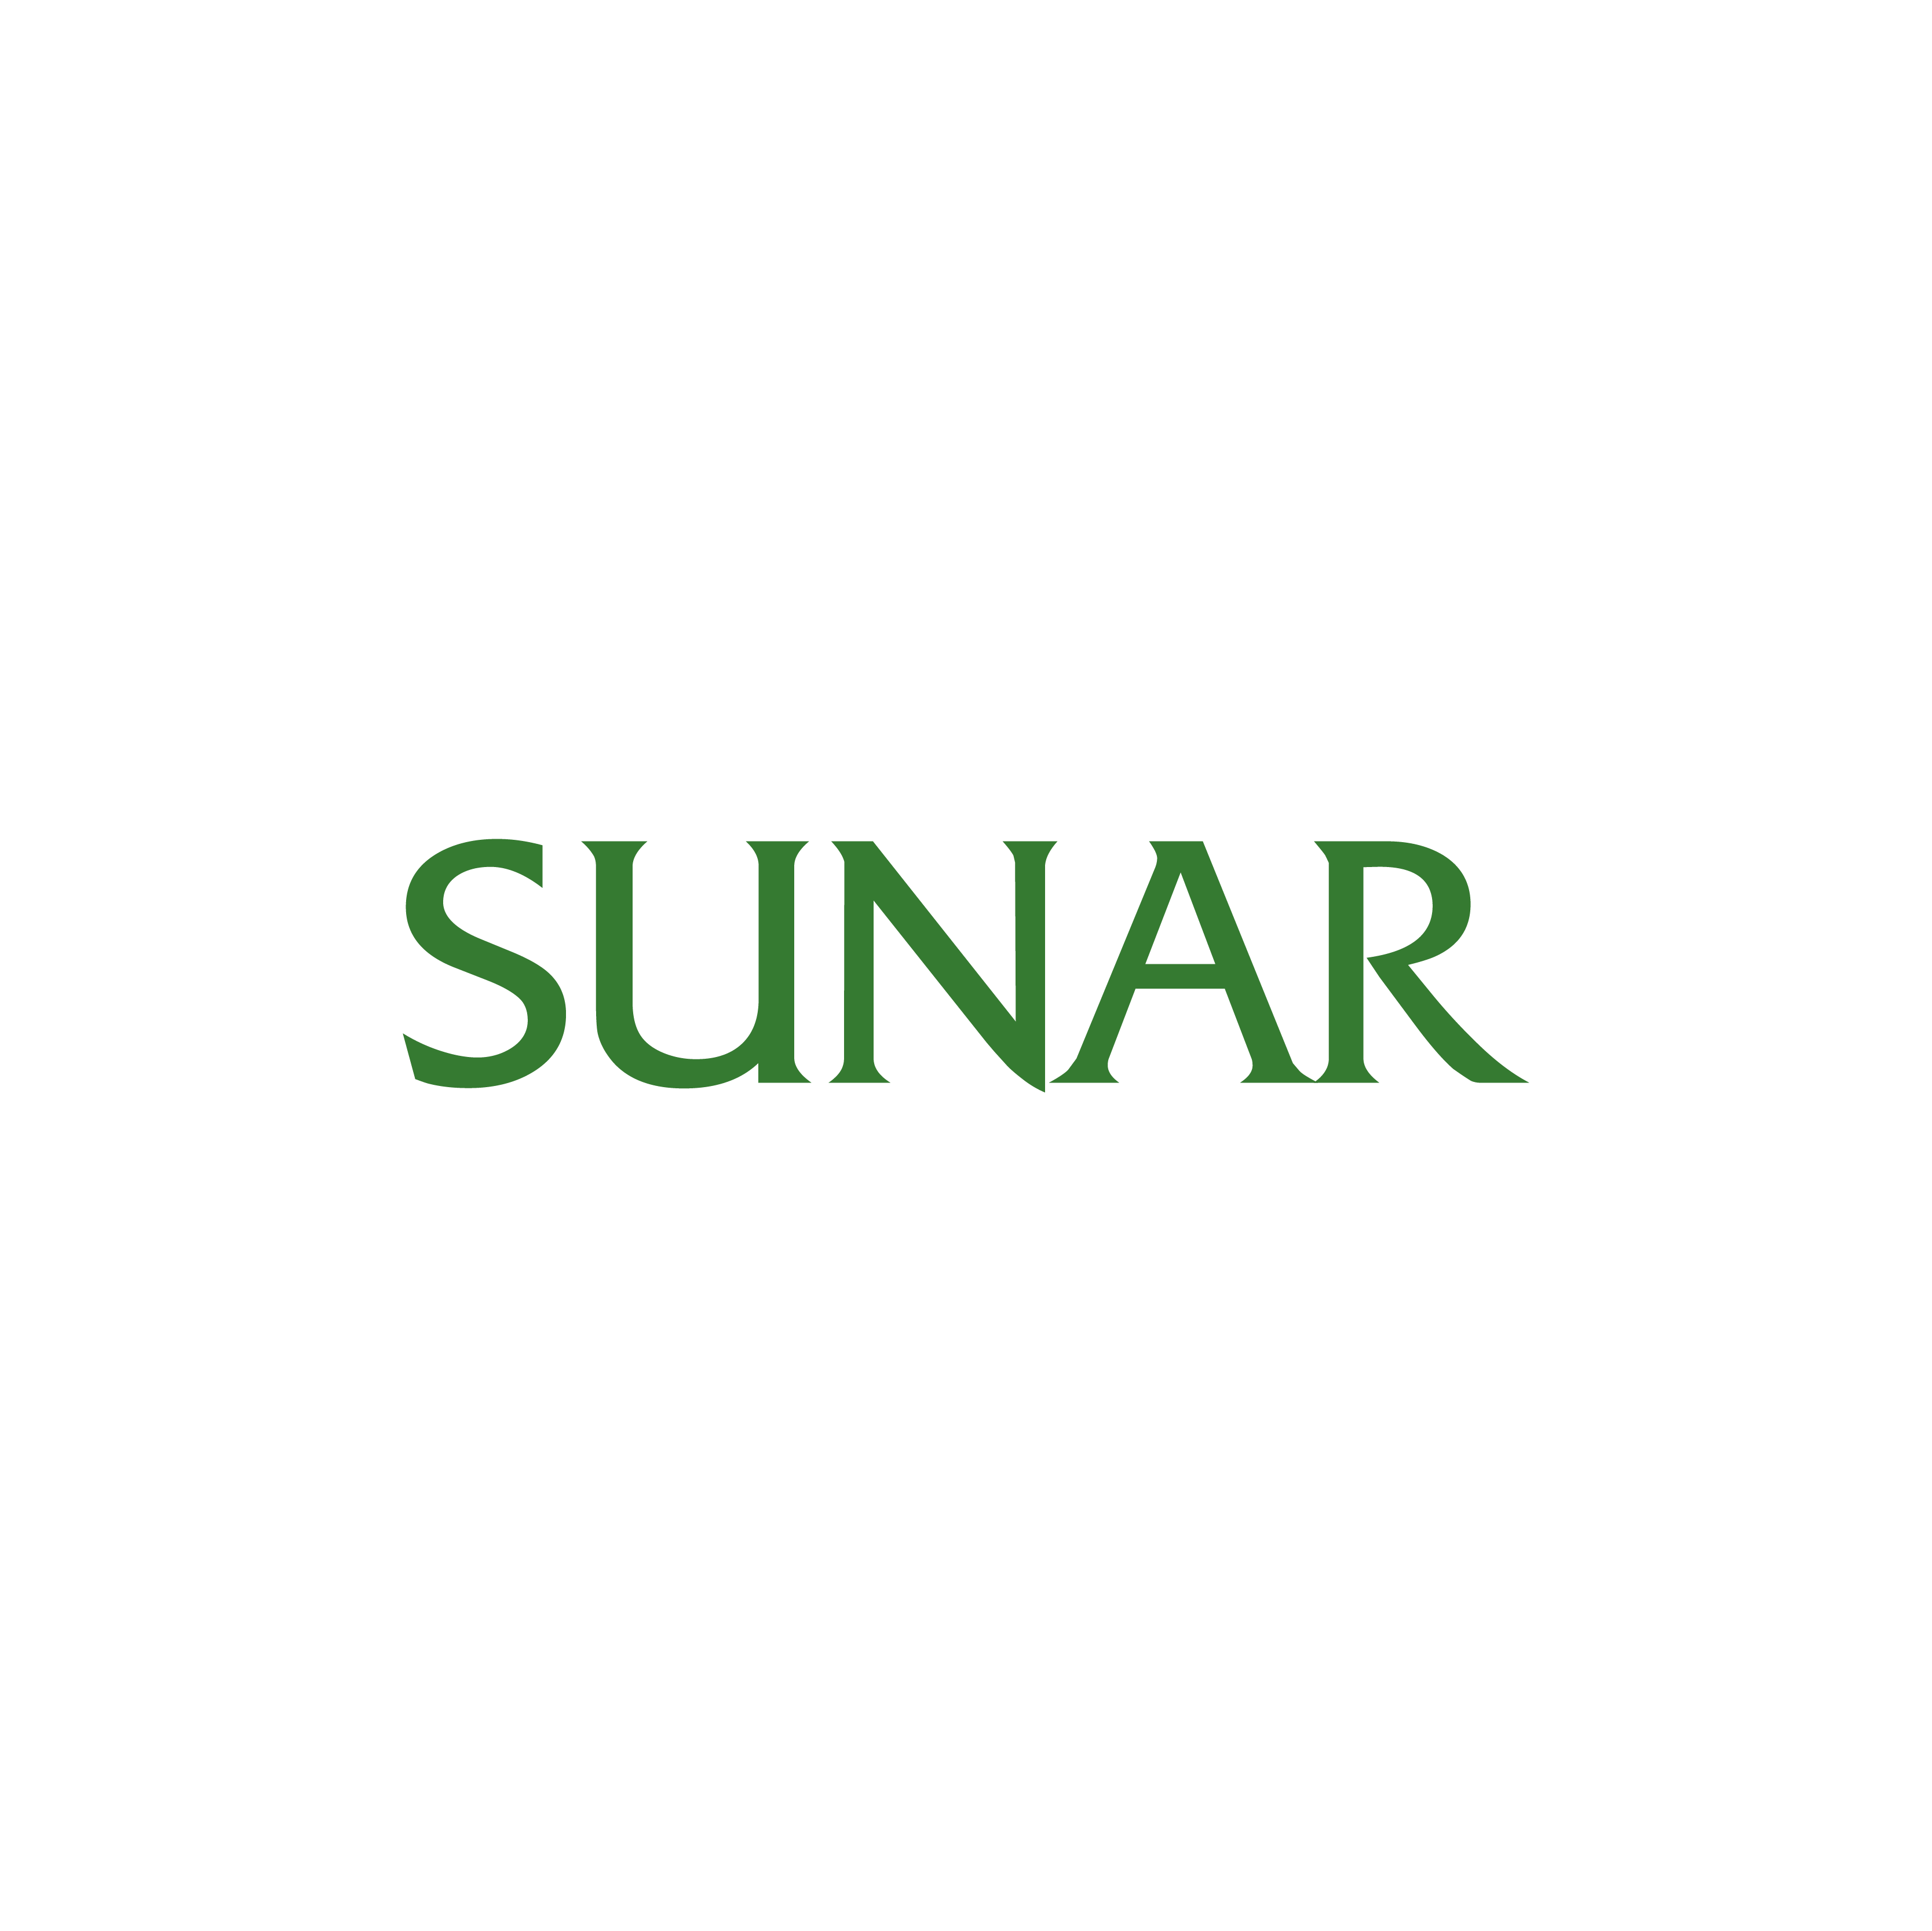 SUNAR firma logosu